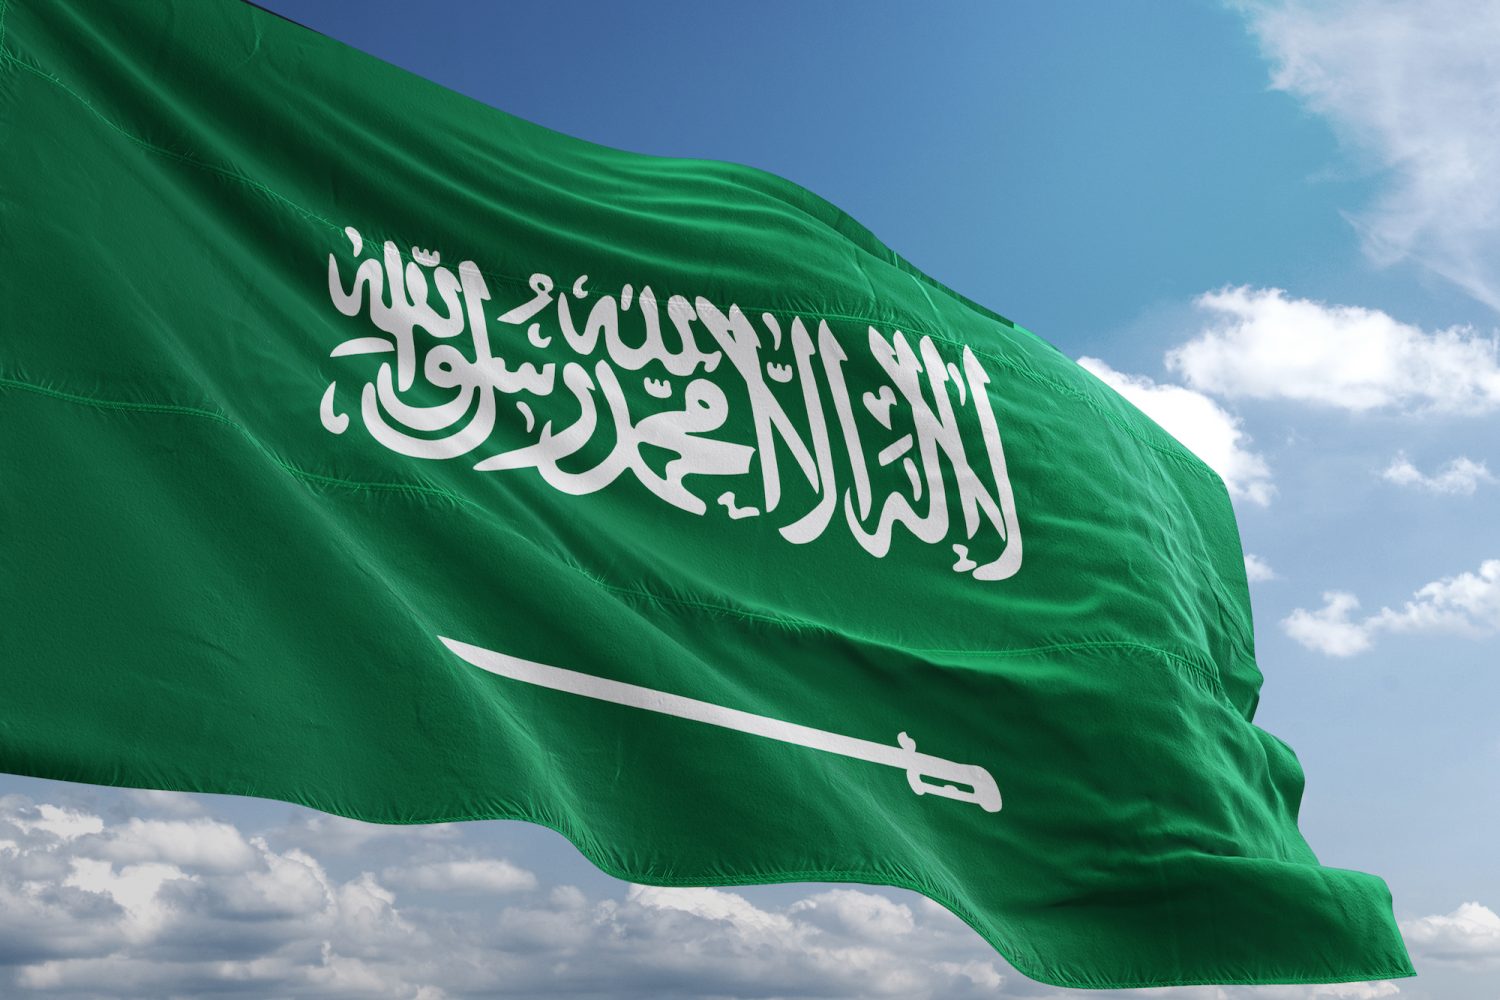 السعودية : اصدار الآف القرارت الرادعة ضد المقيمين الذين ارتكبوا هذه المخالفات الشائعة..تفاصيل